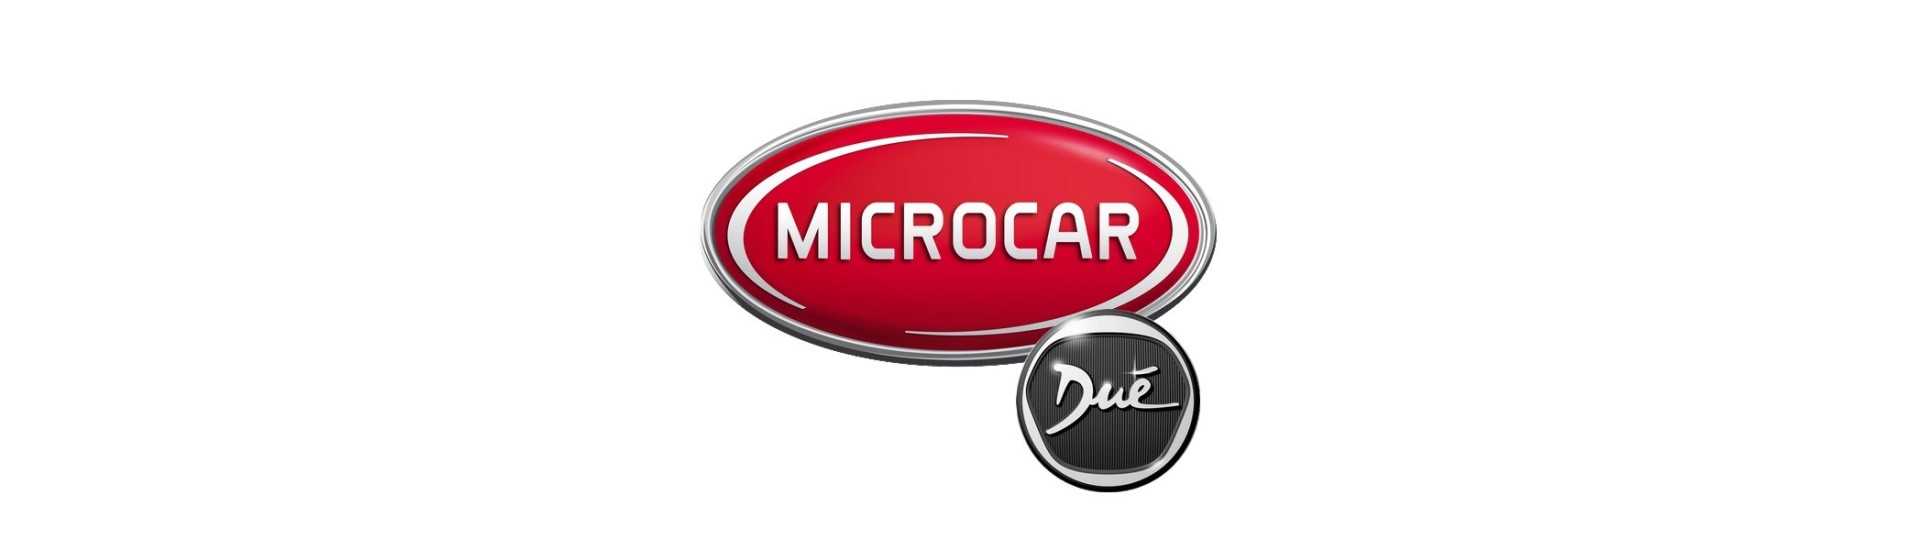 Cardan ao melhor preço para o carro sem licença Microcar Dué